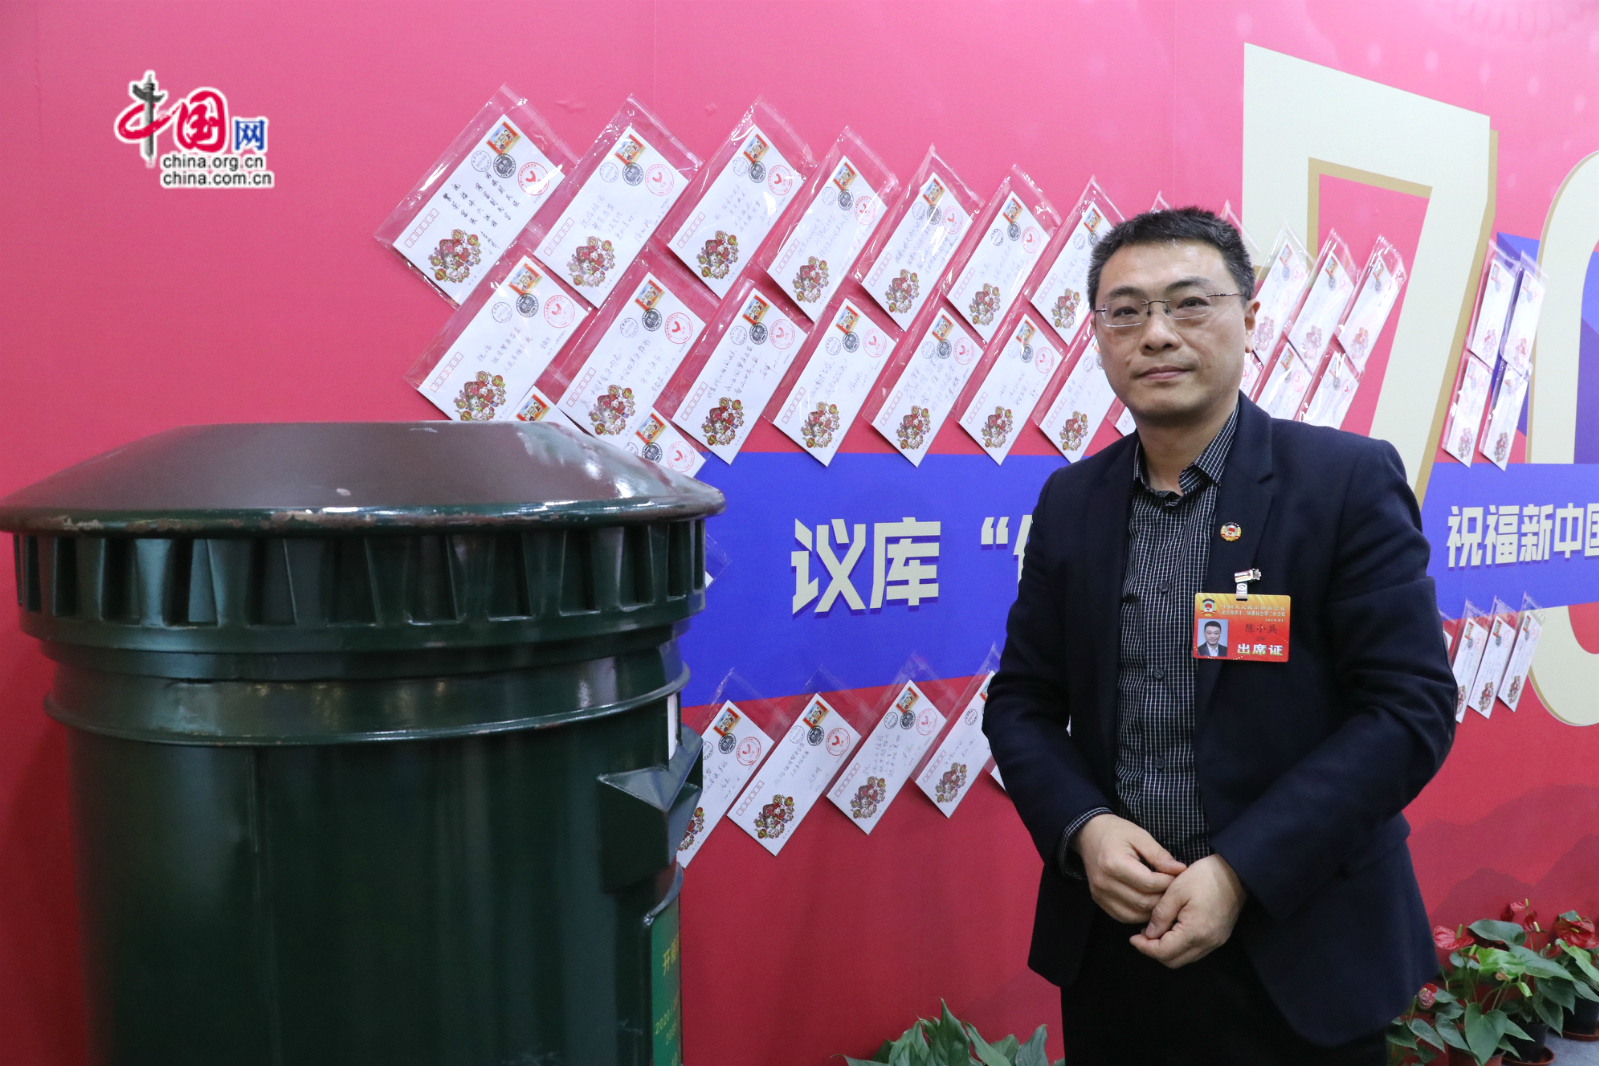 北京市政协委员陈小兵向未来邮局邮筒投递祝福信。中国网记者李培刚摄